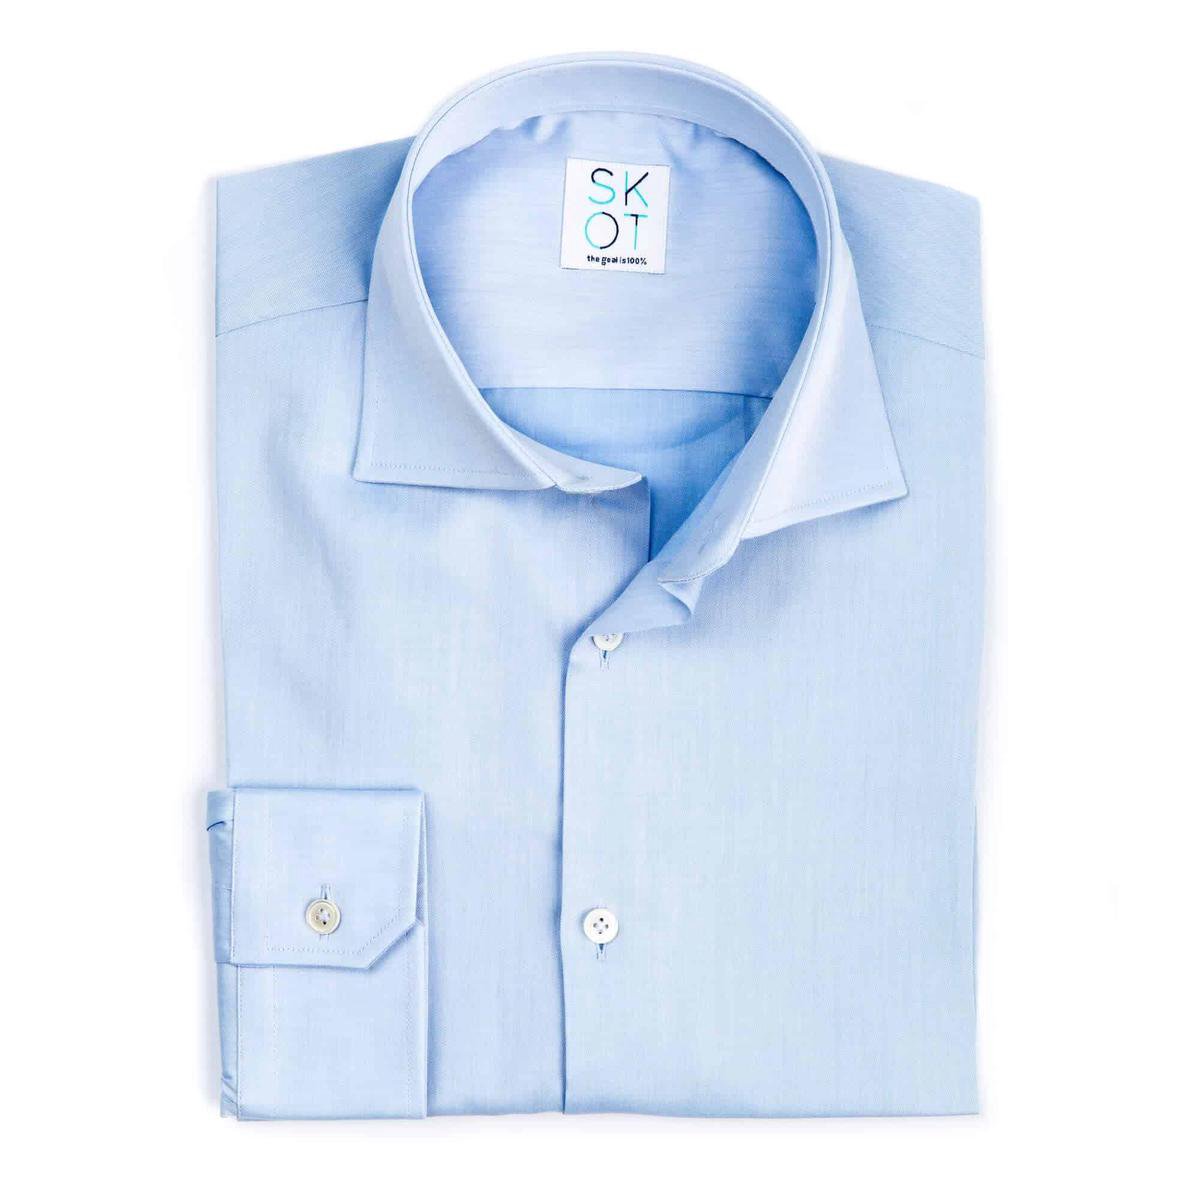 SKOT Fashion Duurzaam Overhemd Heren Serious Blue - Lichtblauw - Maat 46